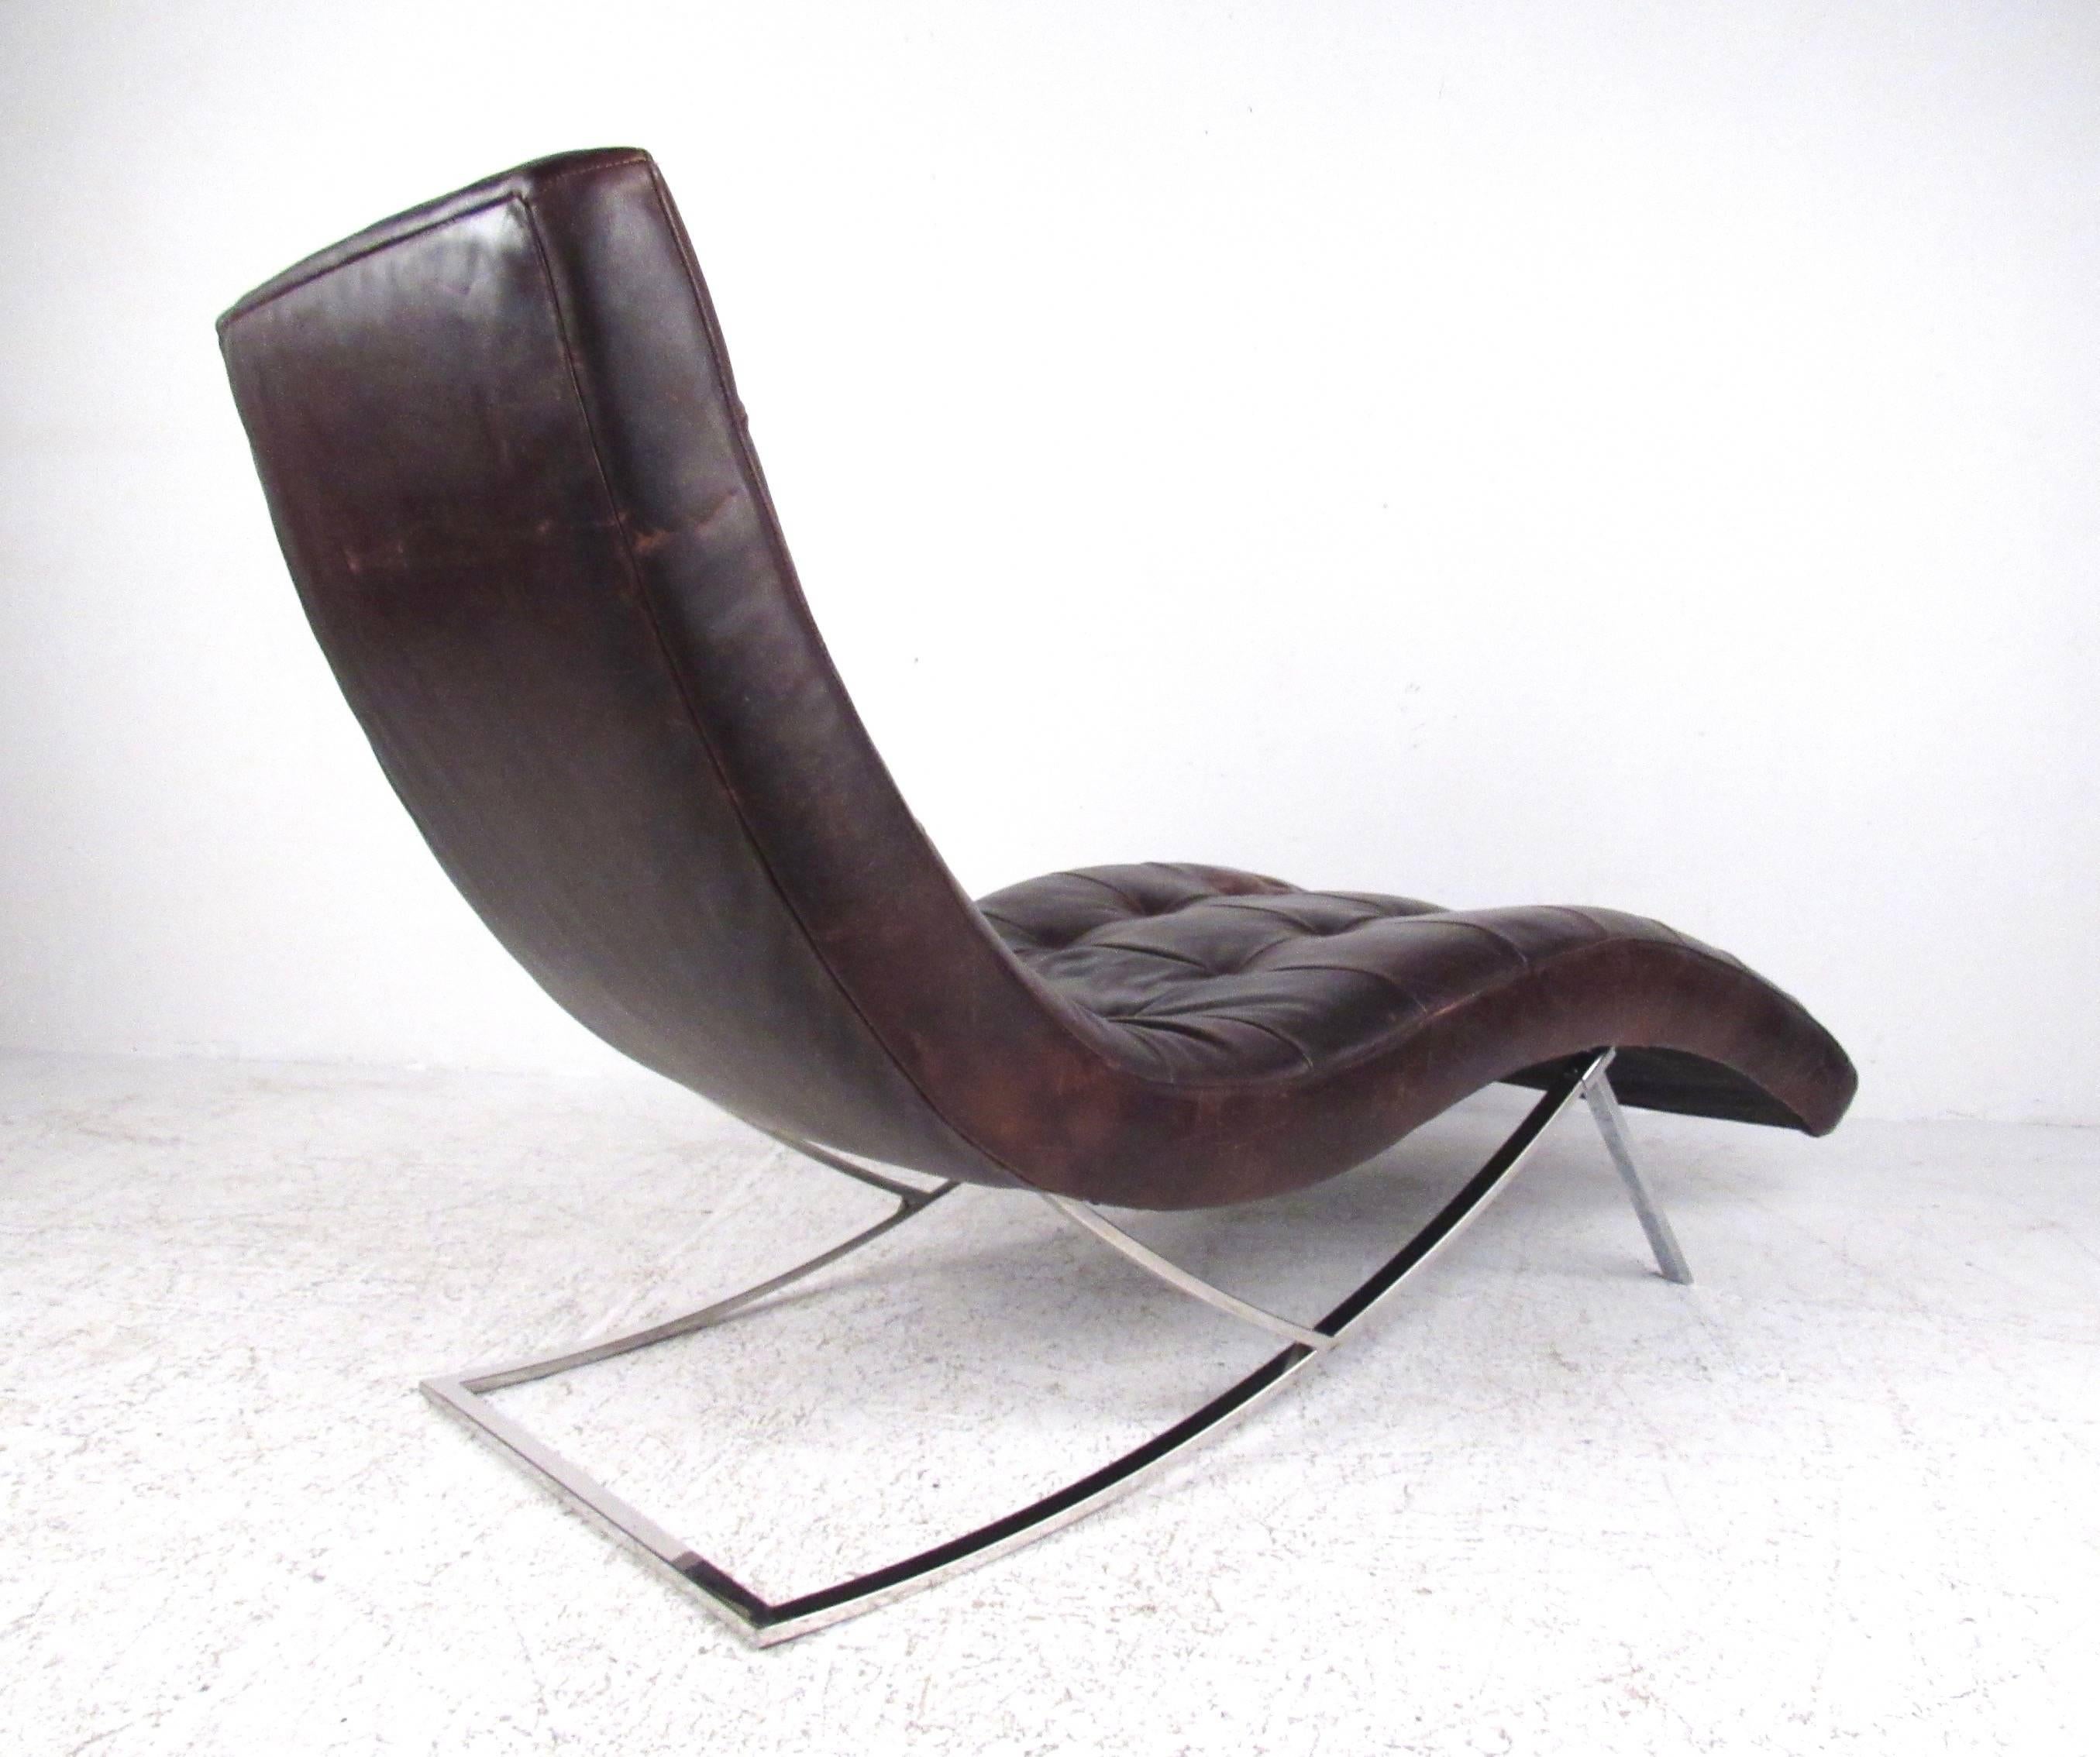 Dieser stilvolle, moderne Chaiselongue-Sessel besteht aus getuftetem, braunem Leder mit gealterter Patina auf einem verchromten Sockel. Das bequeme Lounge-Design macht diesen Stuhl zu einer hervorragenden Sitzgelegenheit für zu Hause oder im Büro.